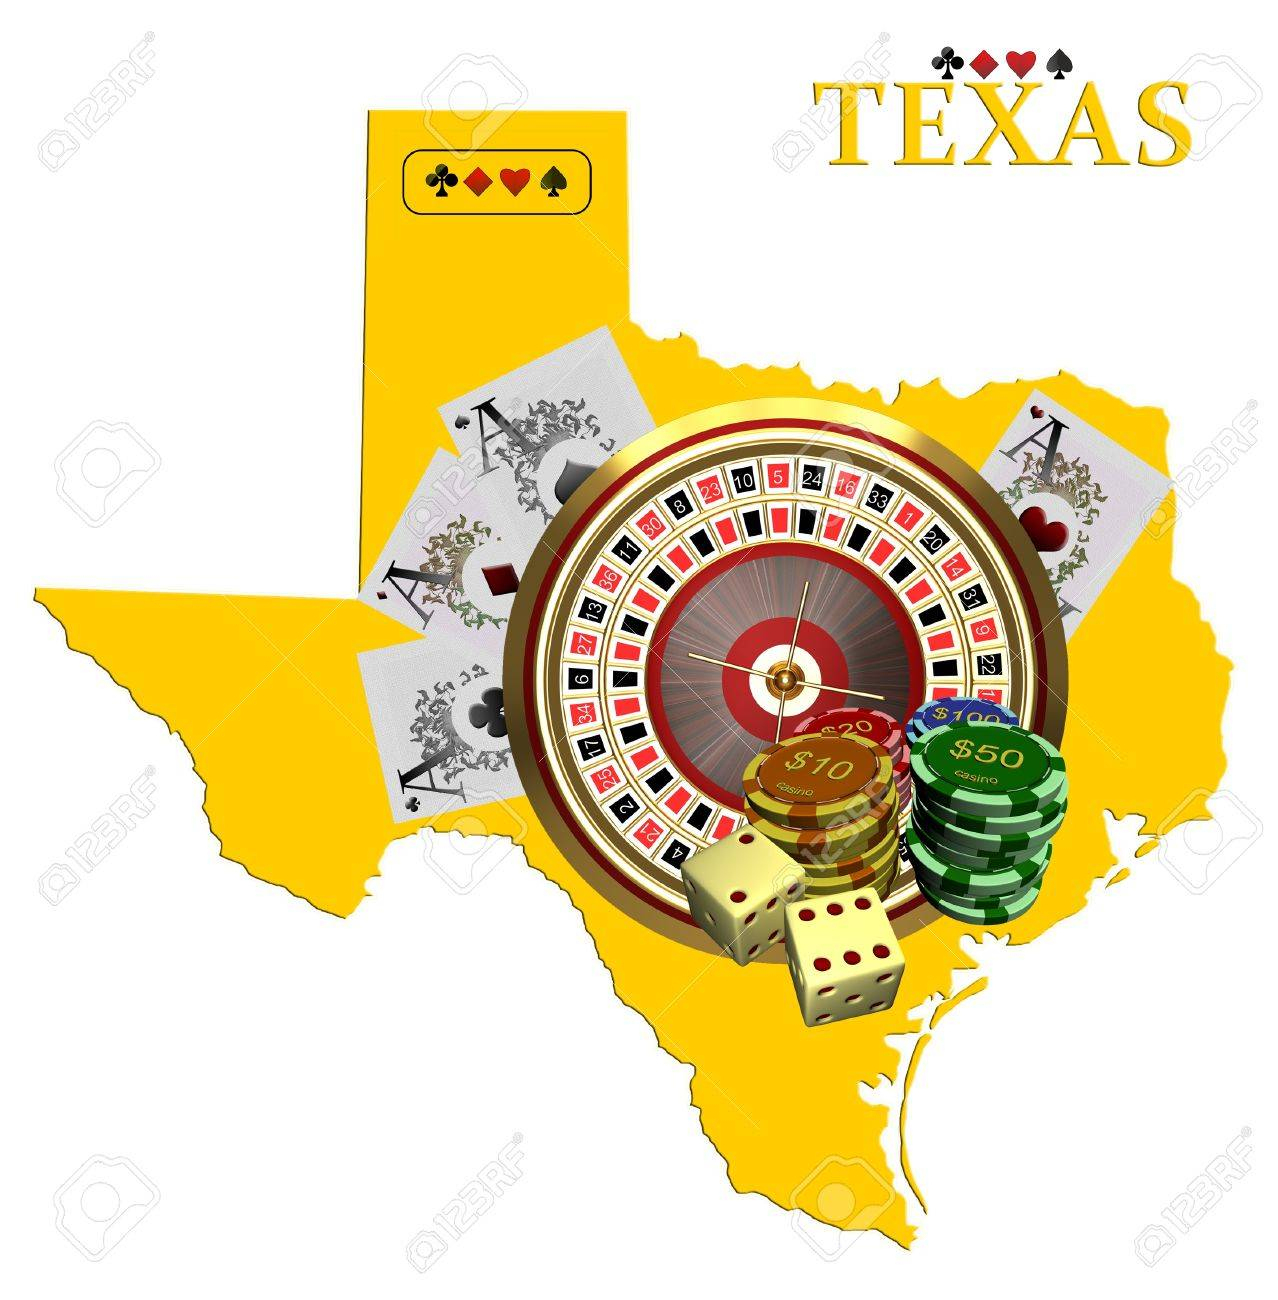 ways around texas gamble laws